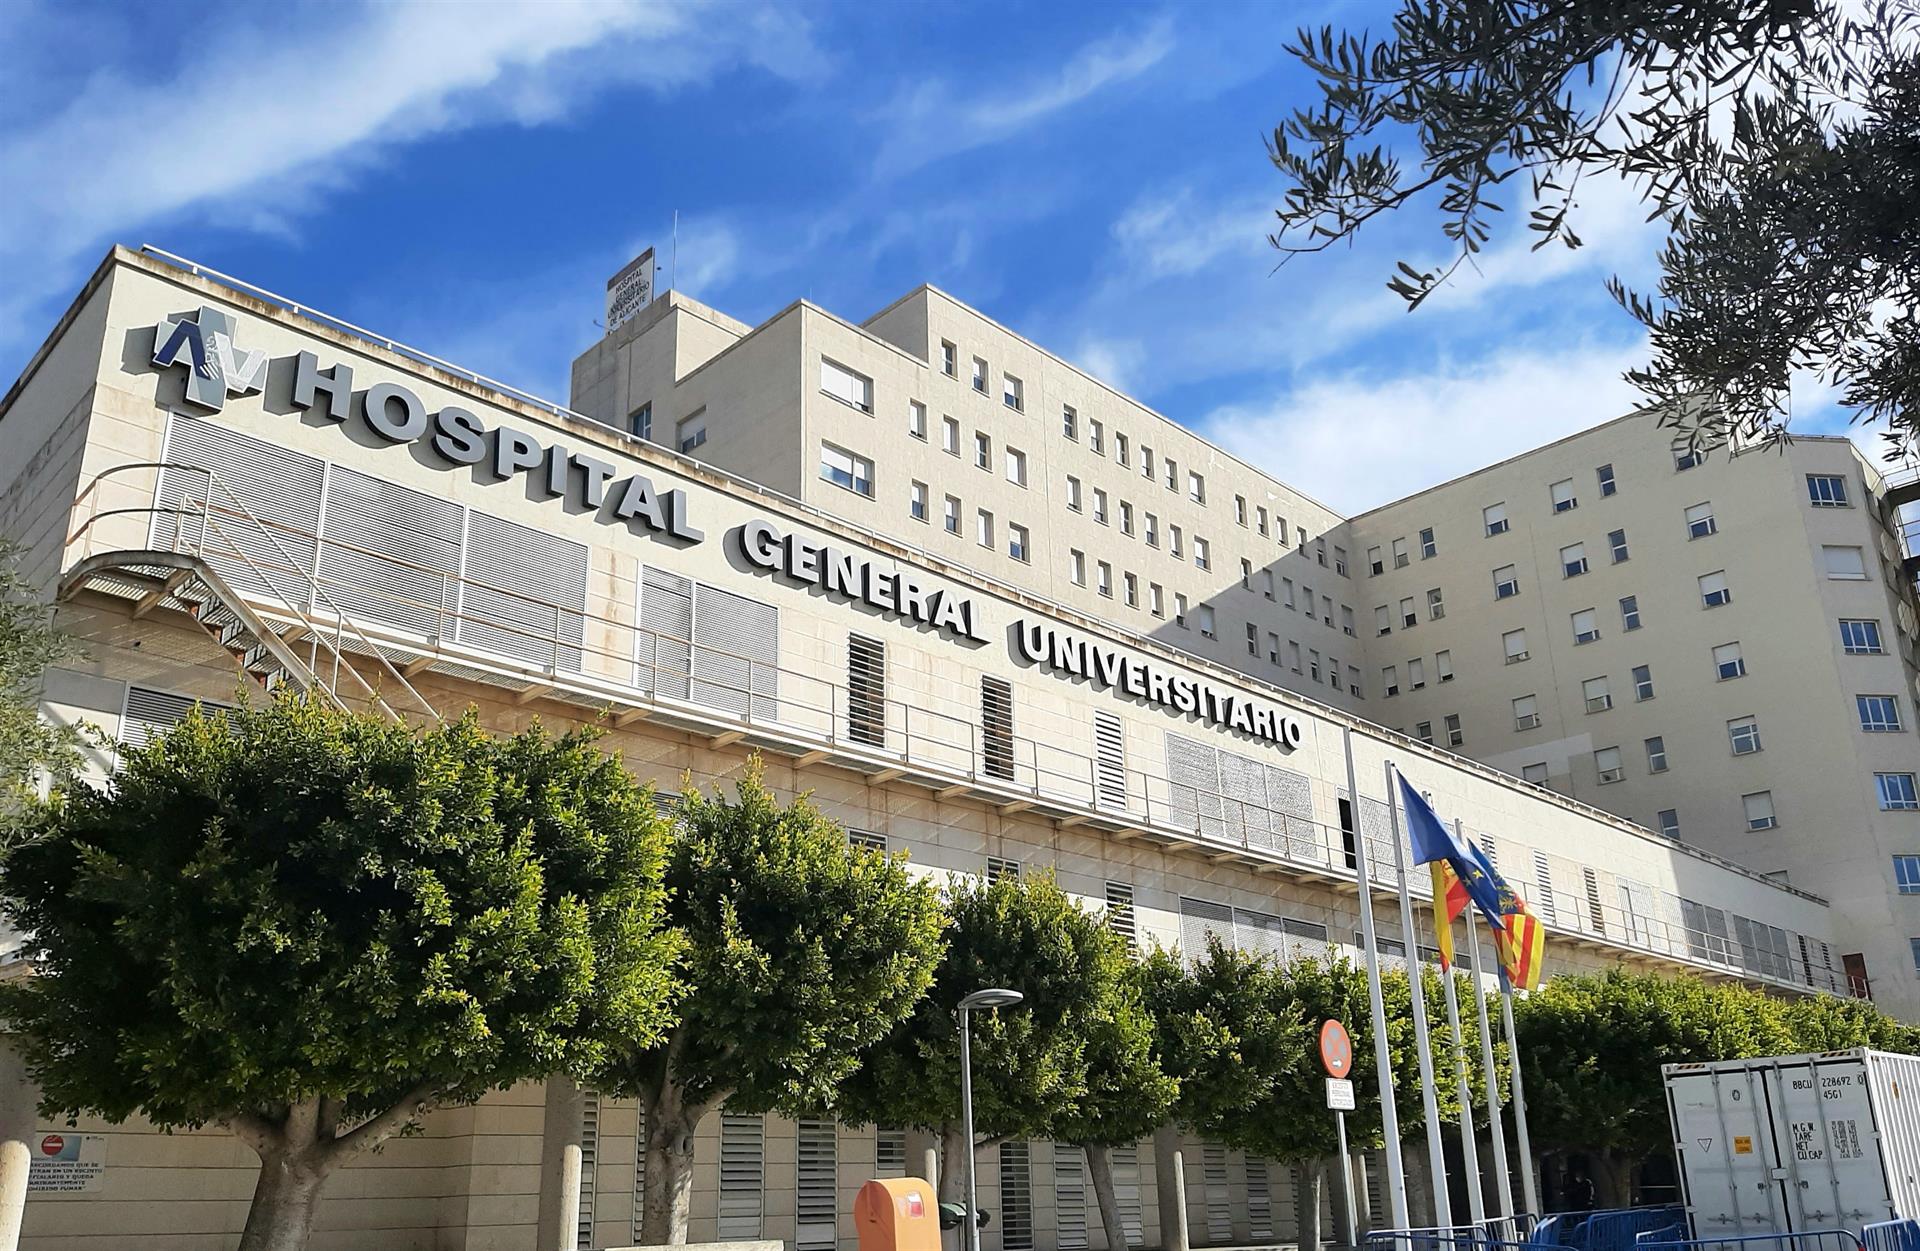 El Hospital General Universitario de Alicante rinde homenaje al Doctor Balmis al incorporar su nombre en su denominación